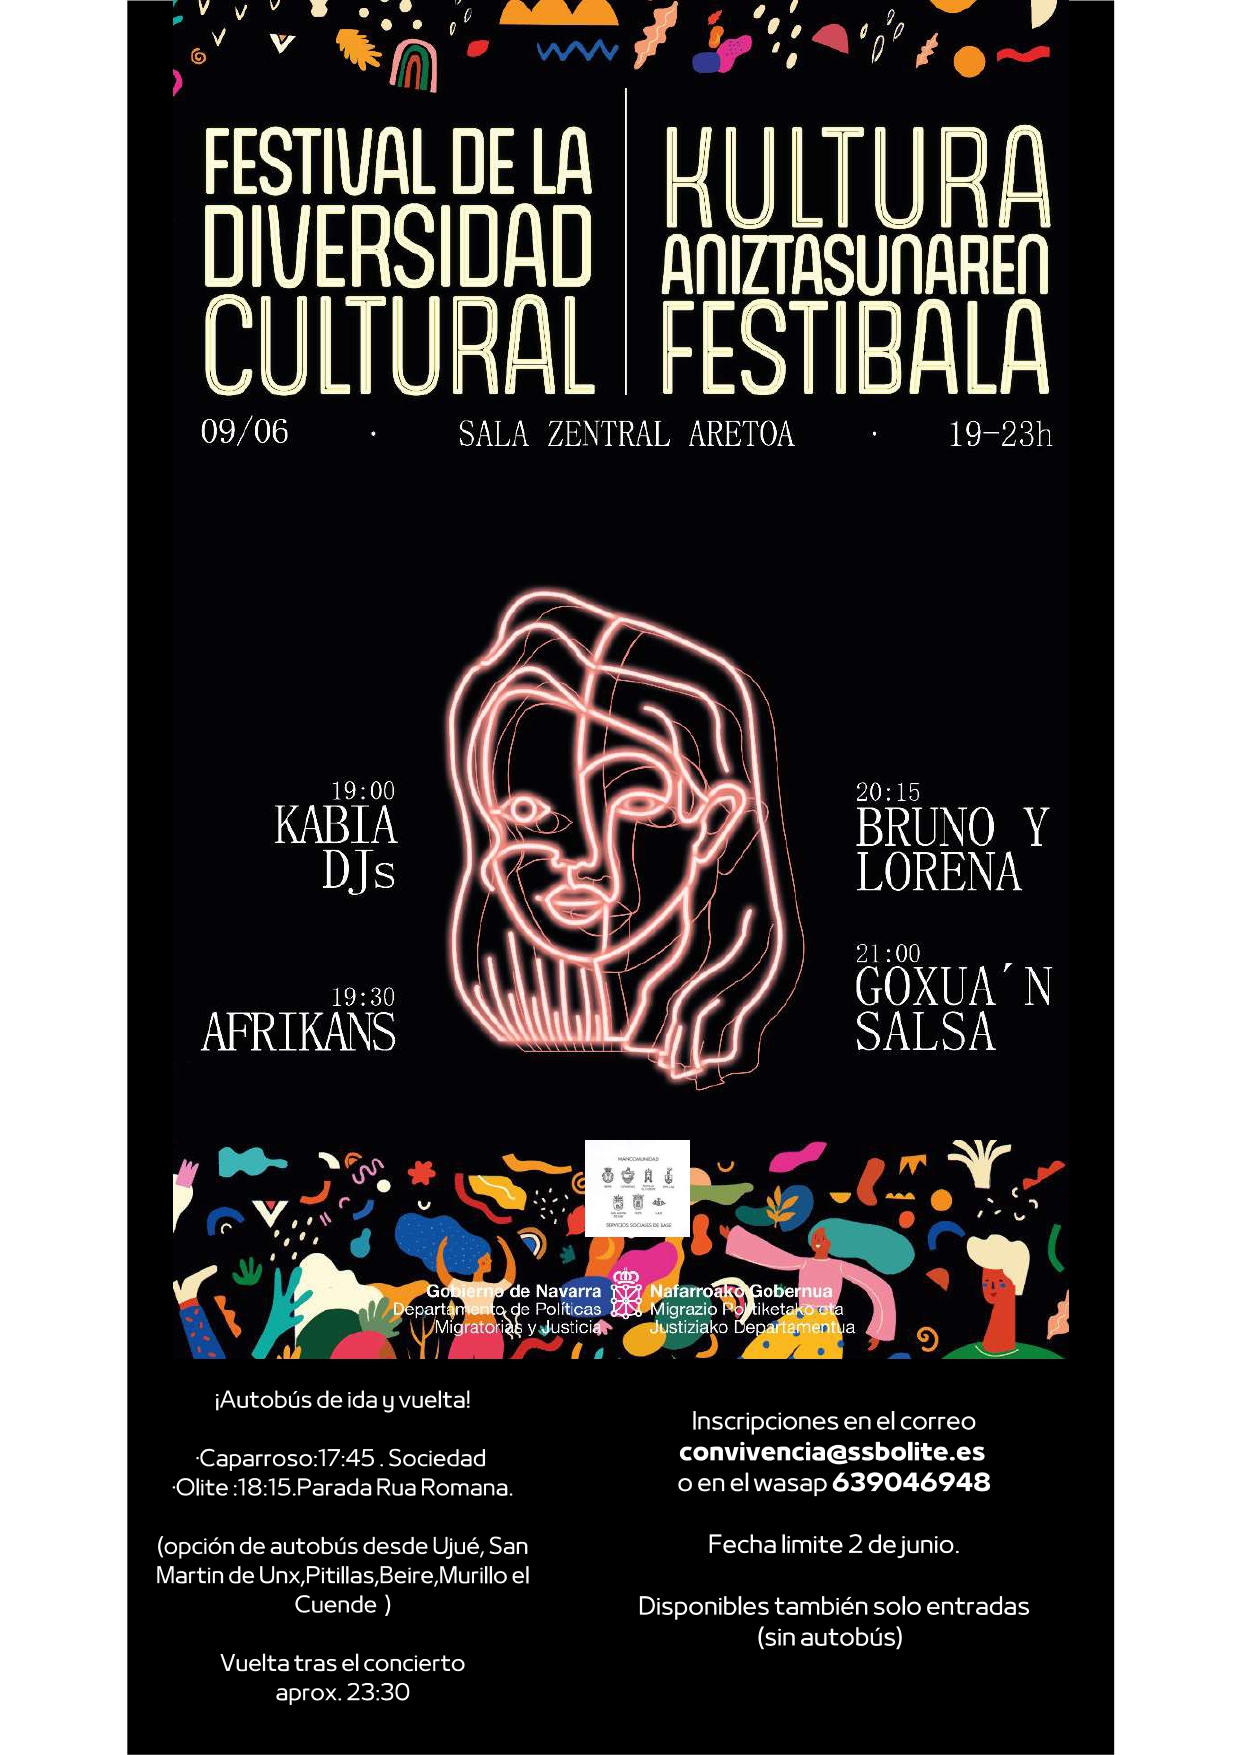 Festival de la diversidad cultural